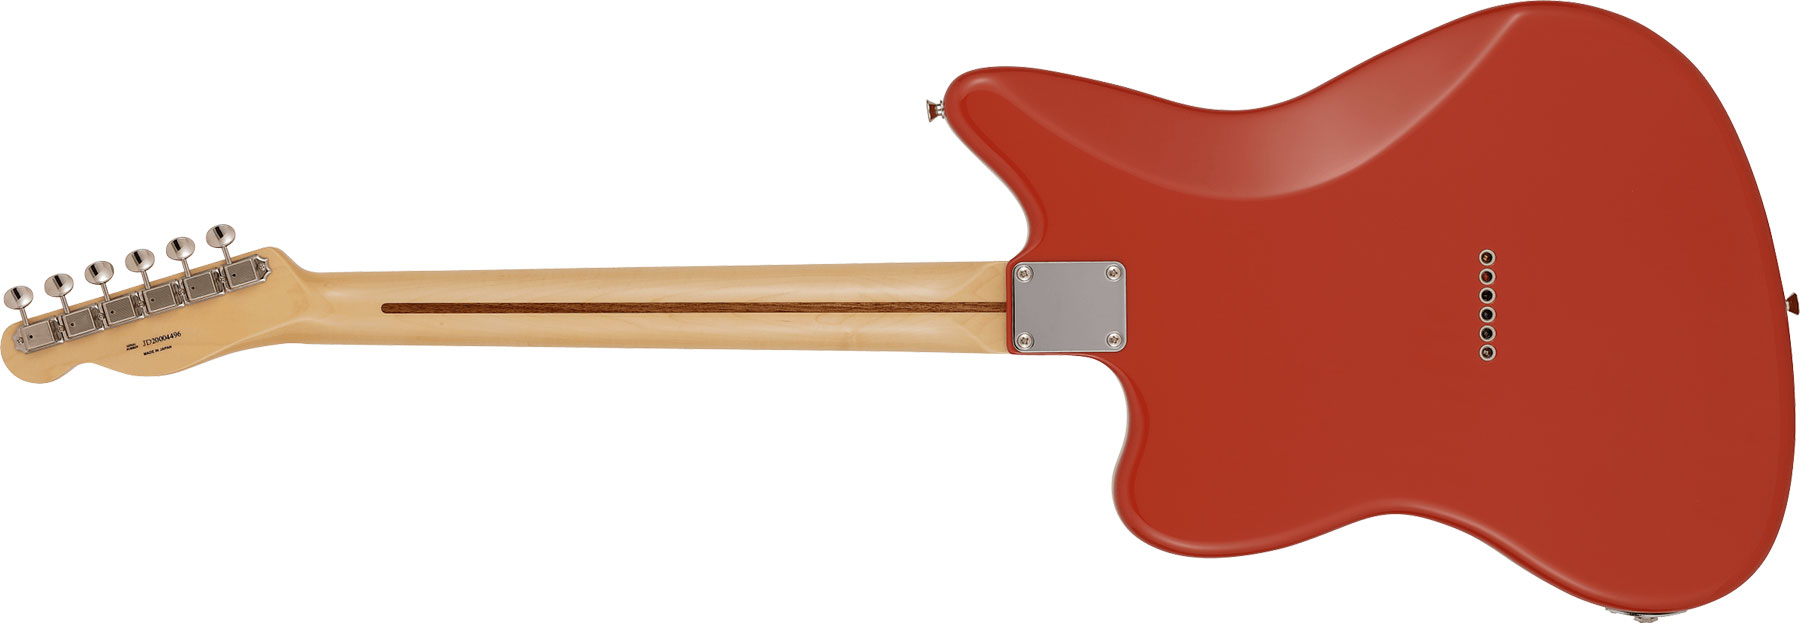 Fender Tele Offset Ltd Jap 2s Ht Mn - Fiesta Red - Retro-rock elektrische gitaar - Variation 1